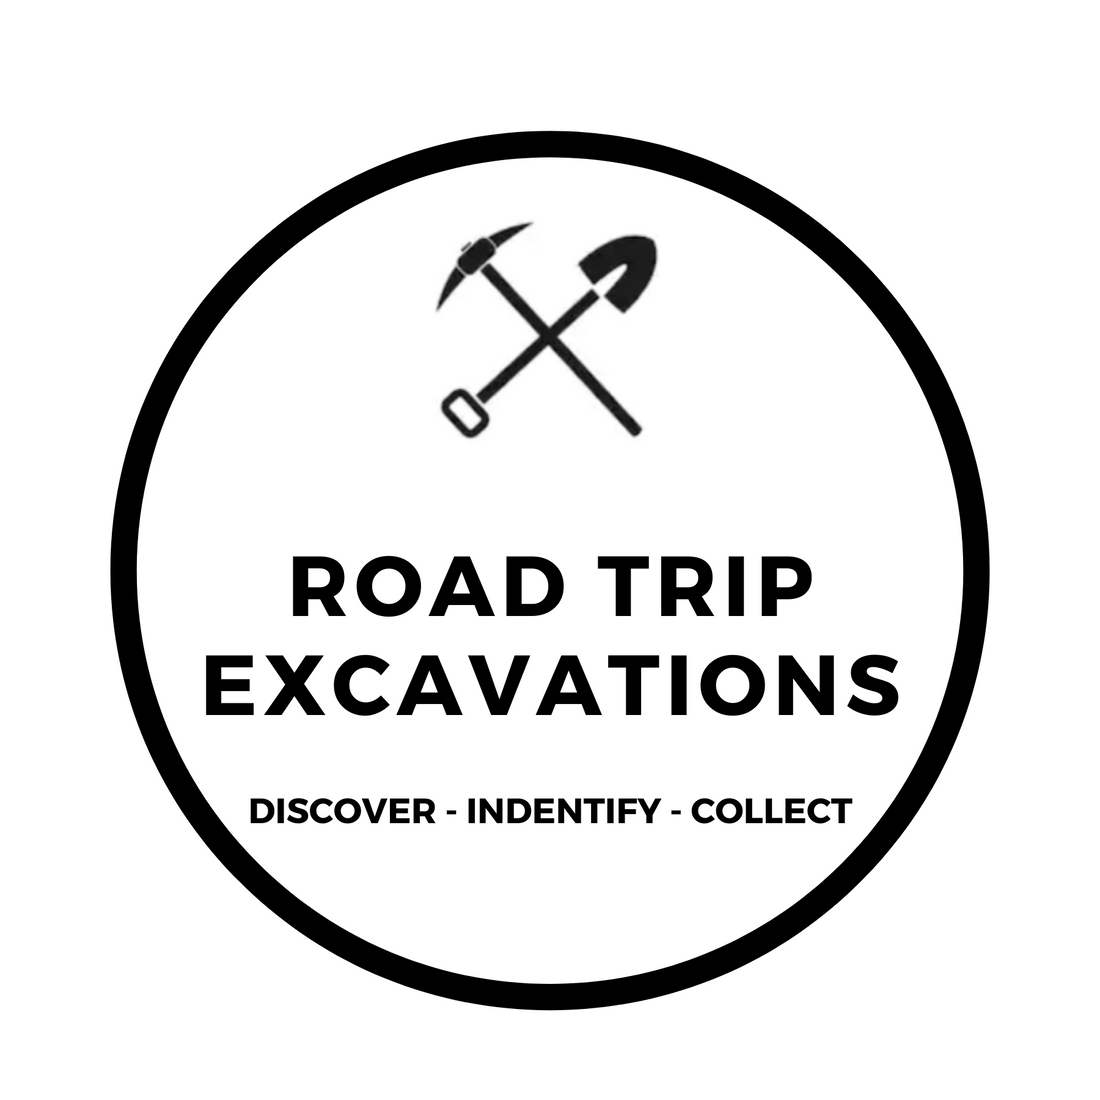 ROAD TRIP EXCAVATIONS